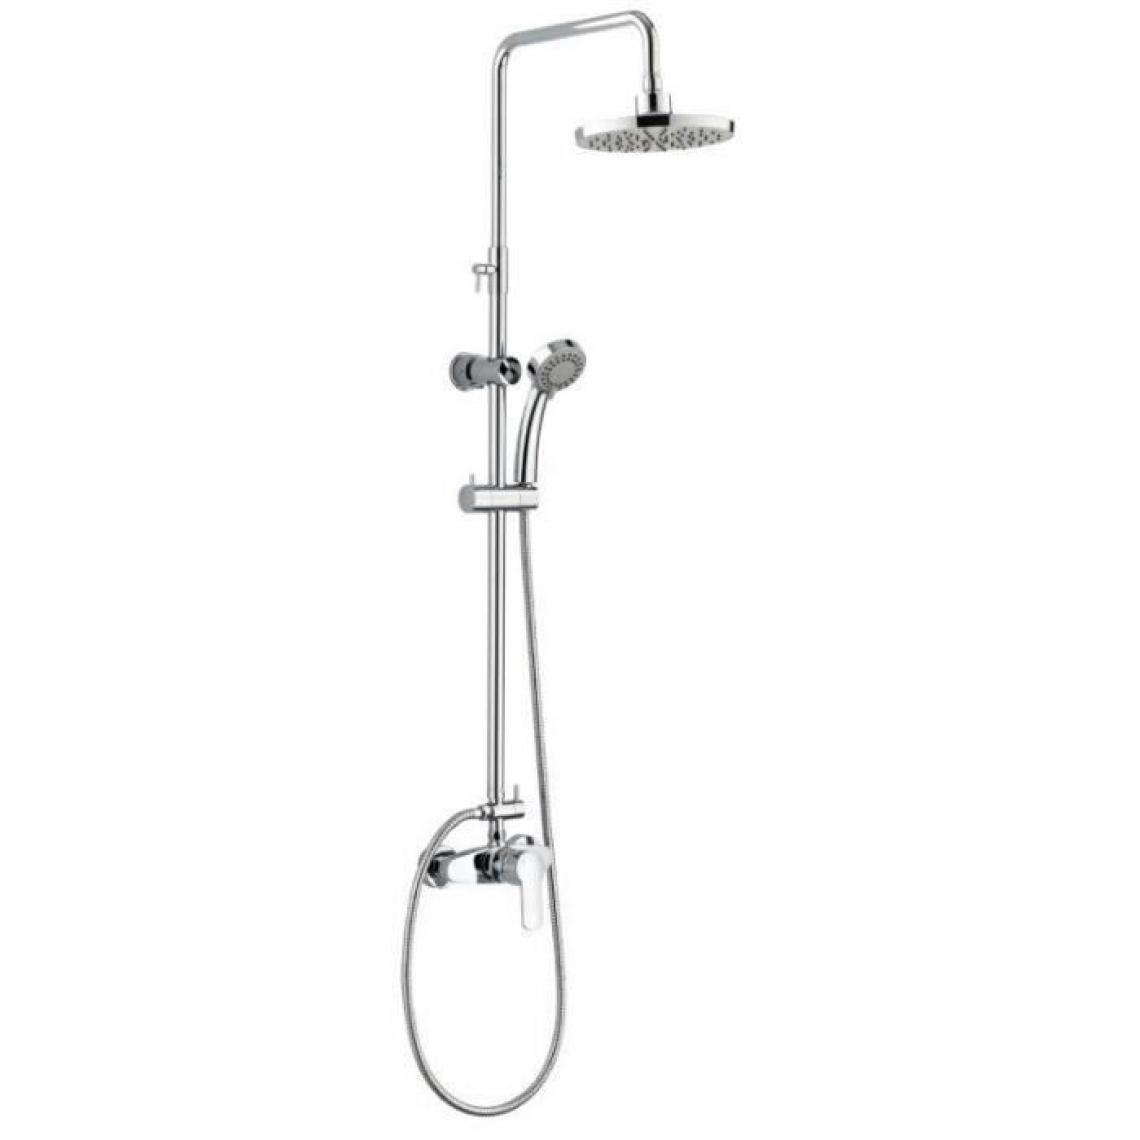 Rousseau - ROUSSEAU Colonne de douche avec robinet mitigeur mécanique Shenti chrome - Colonne de douche